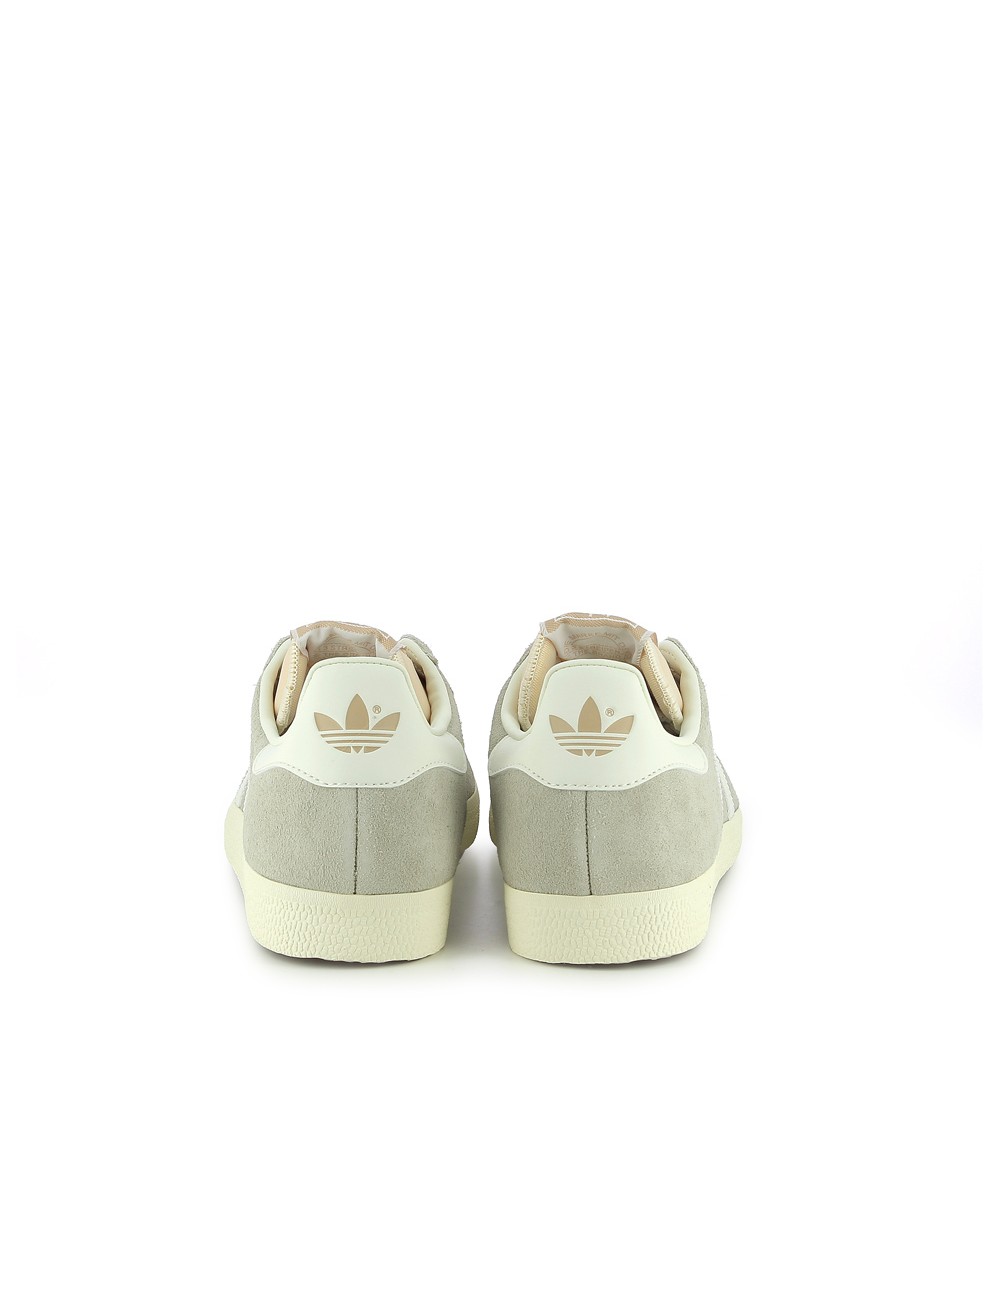 Adidas Gazelle Wonder Beige Off White Cream White IG5796